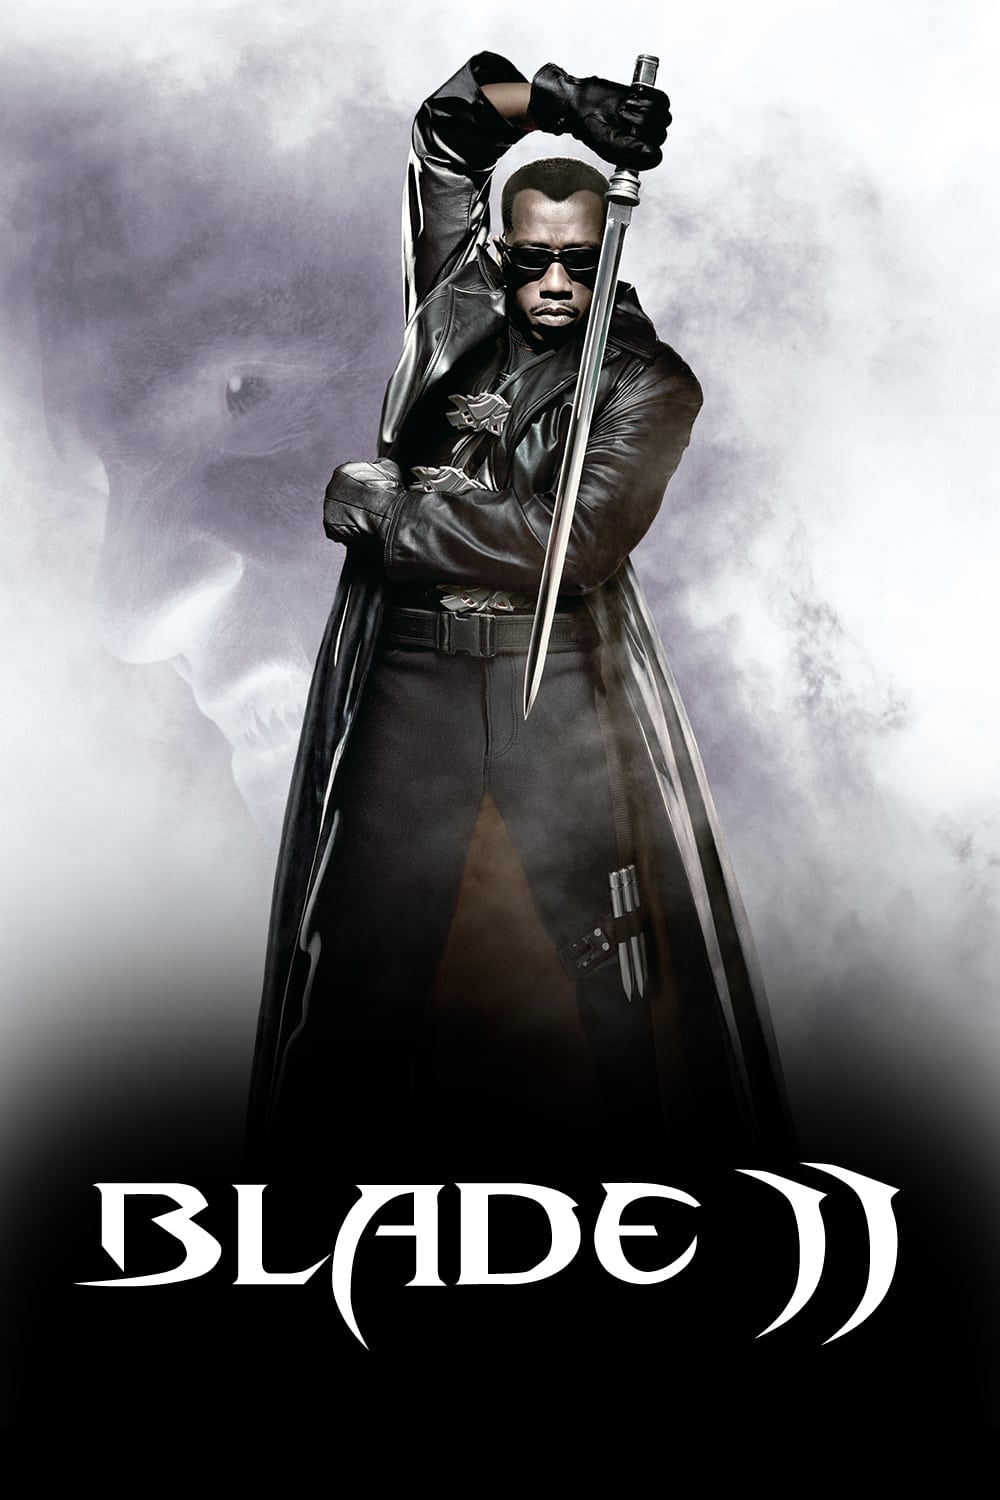 ดูหนังออนไลน์ฟรี Blade II เบลด 2 นักล่าพันธุ์อมตะ